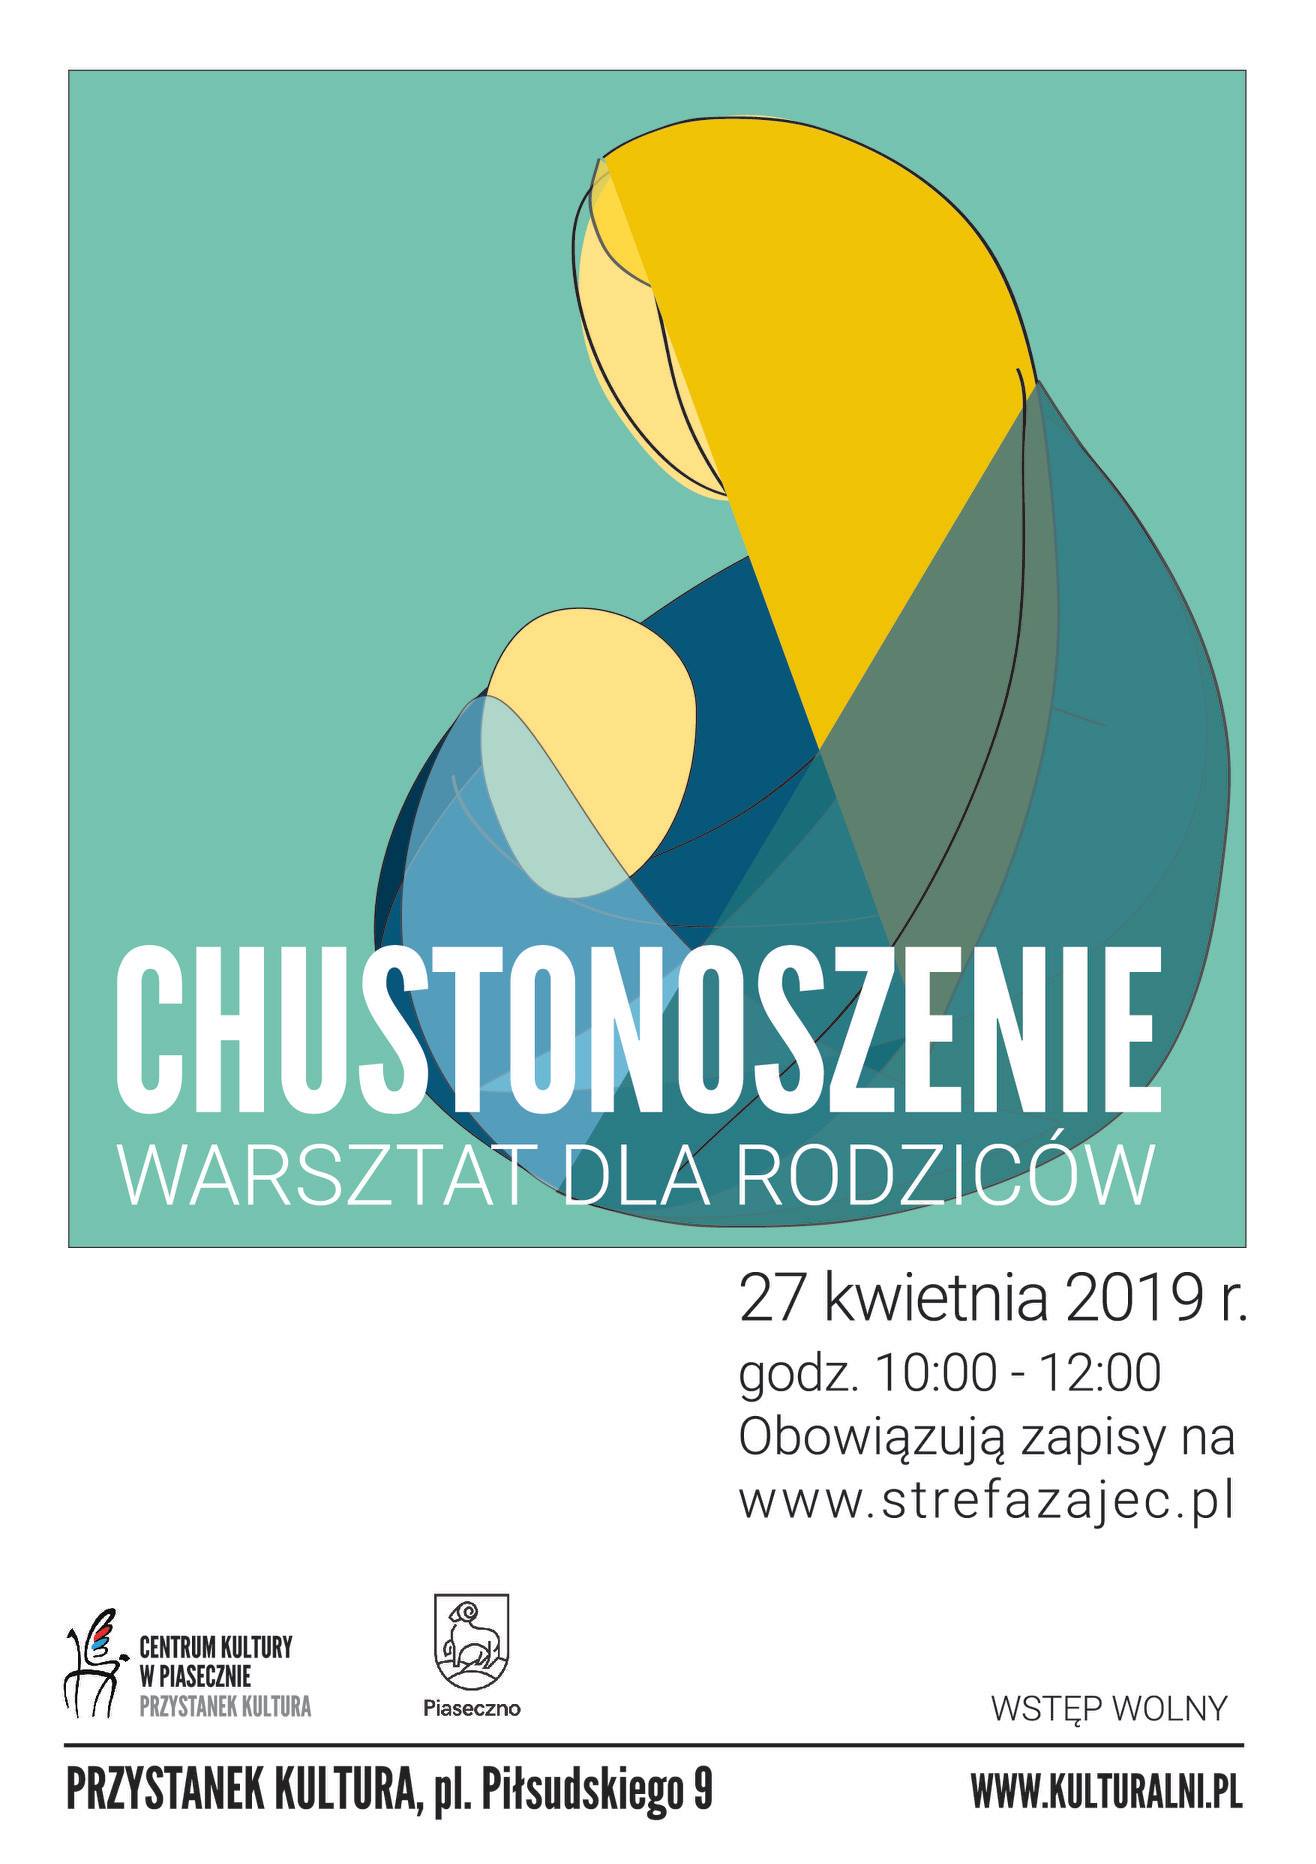 Chustonoszenie - warsztat dla rodziców Piaseczno